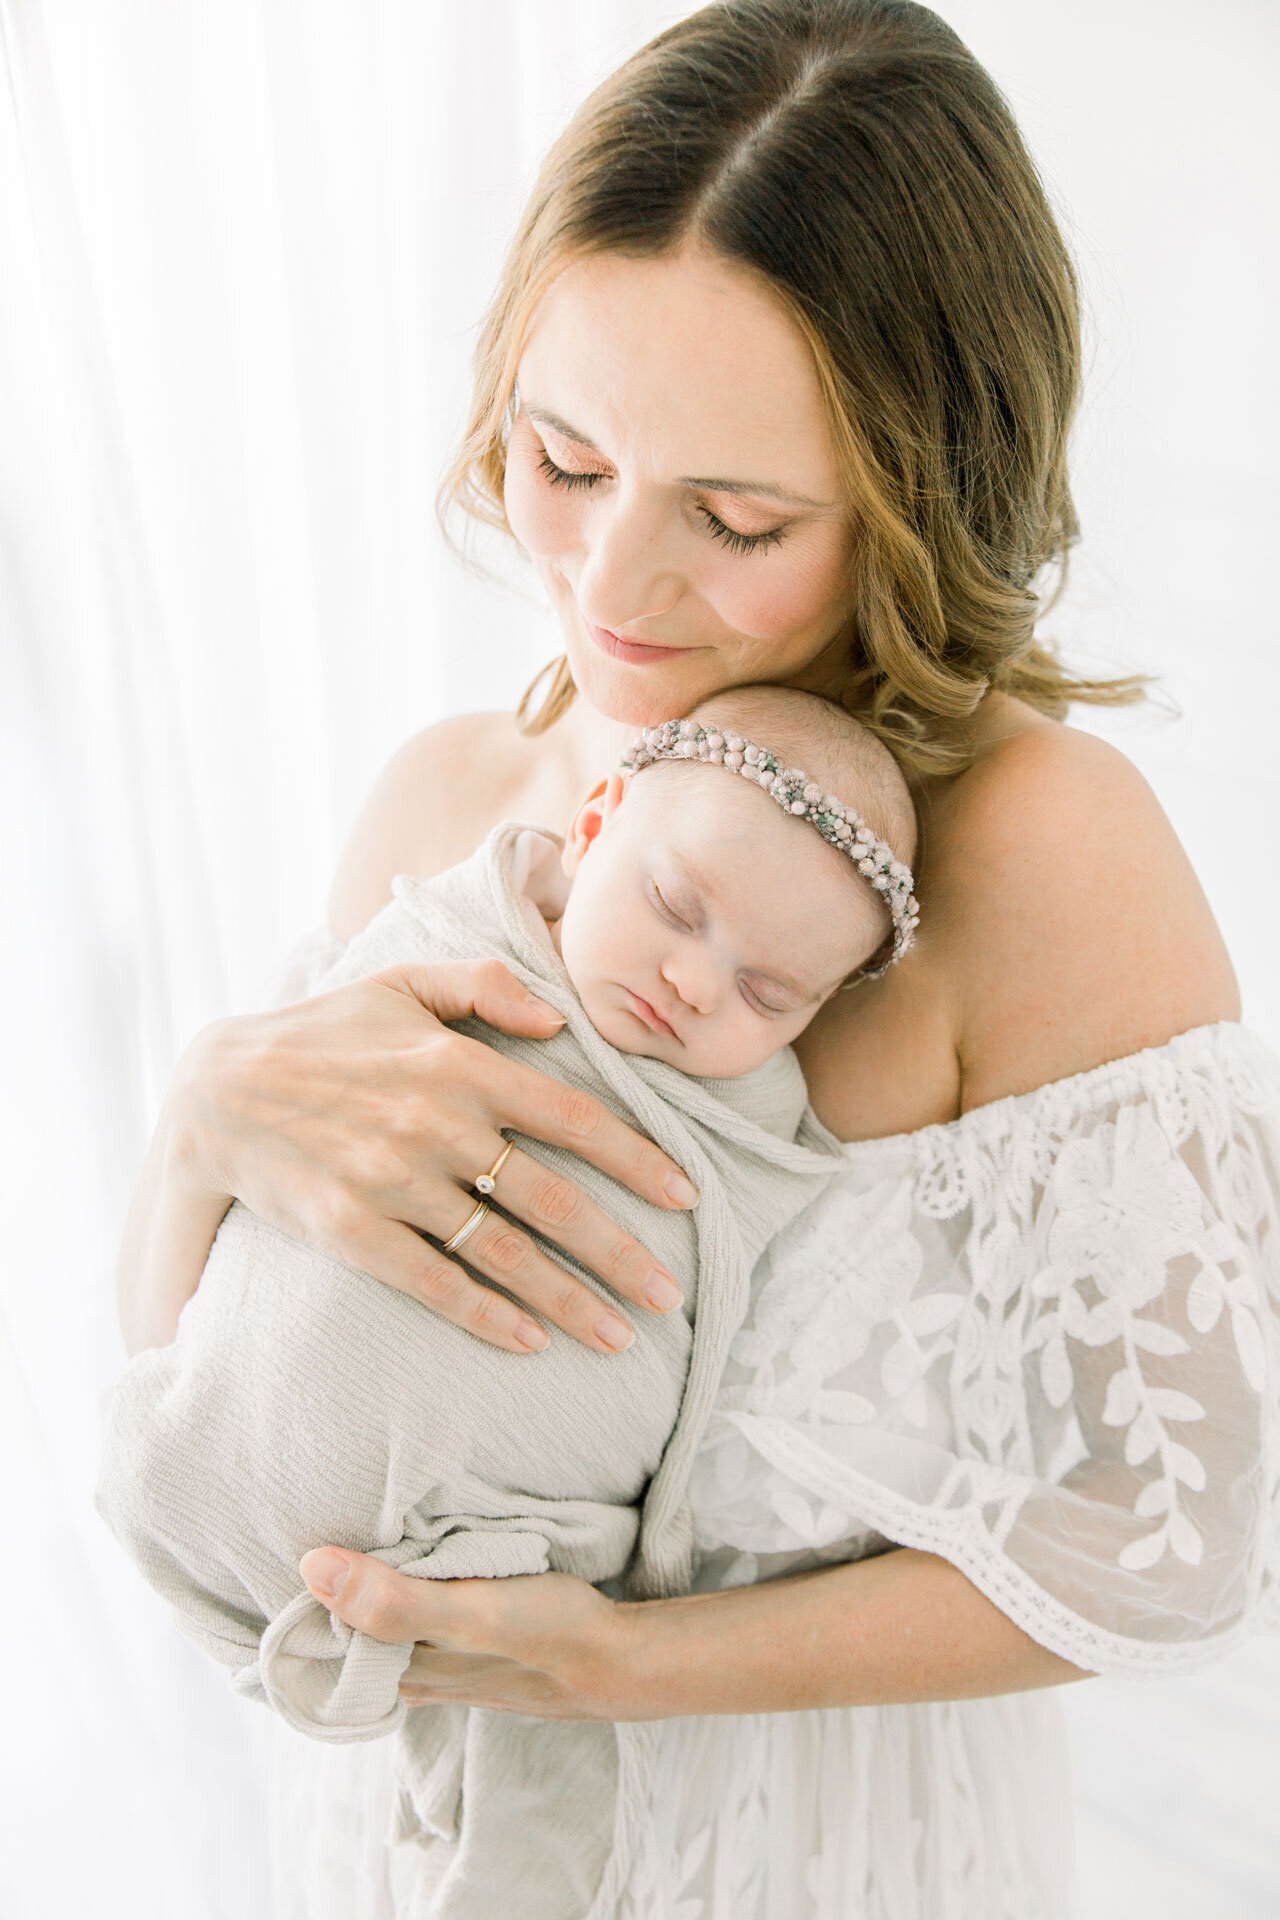 Babyfoto: Mama hält ihr Neugeborenes im Arm, das in ein zartes Deckchen gewickelt ist und einen Blumenkranz auf dem Kopf auf hat.